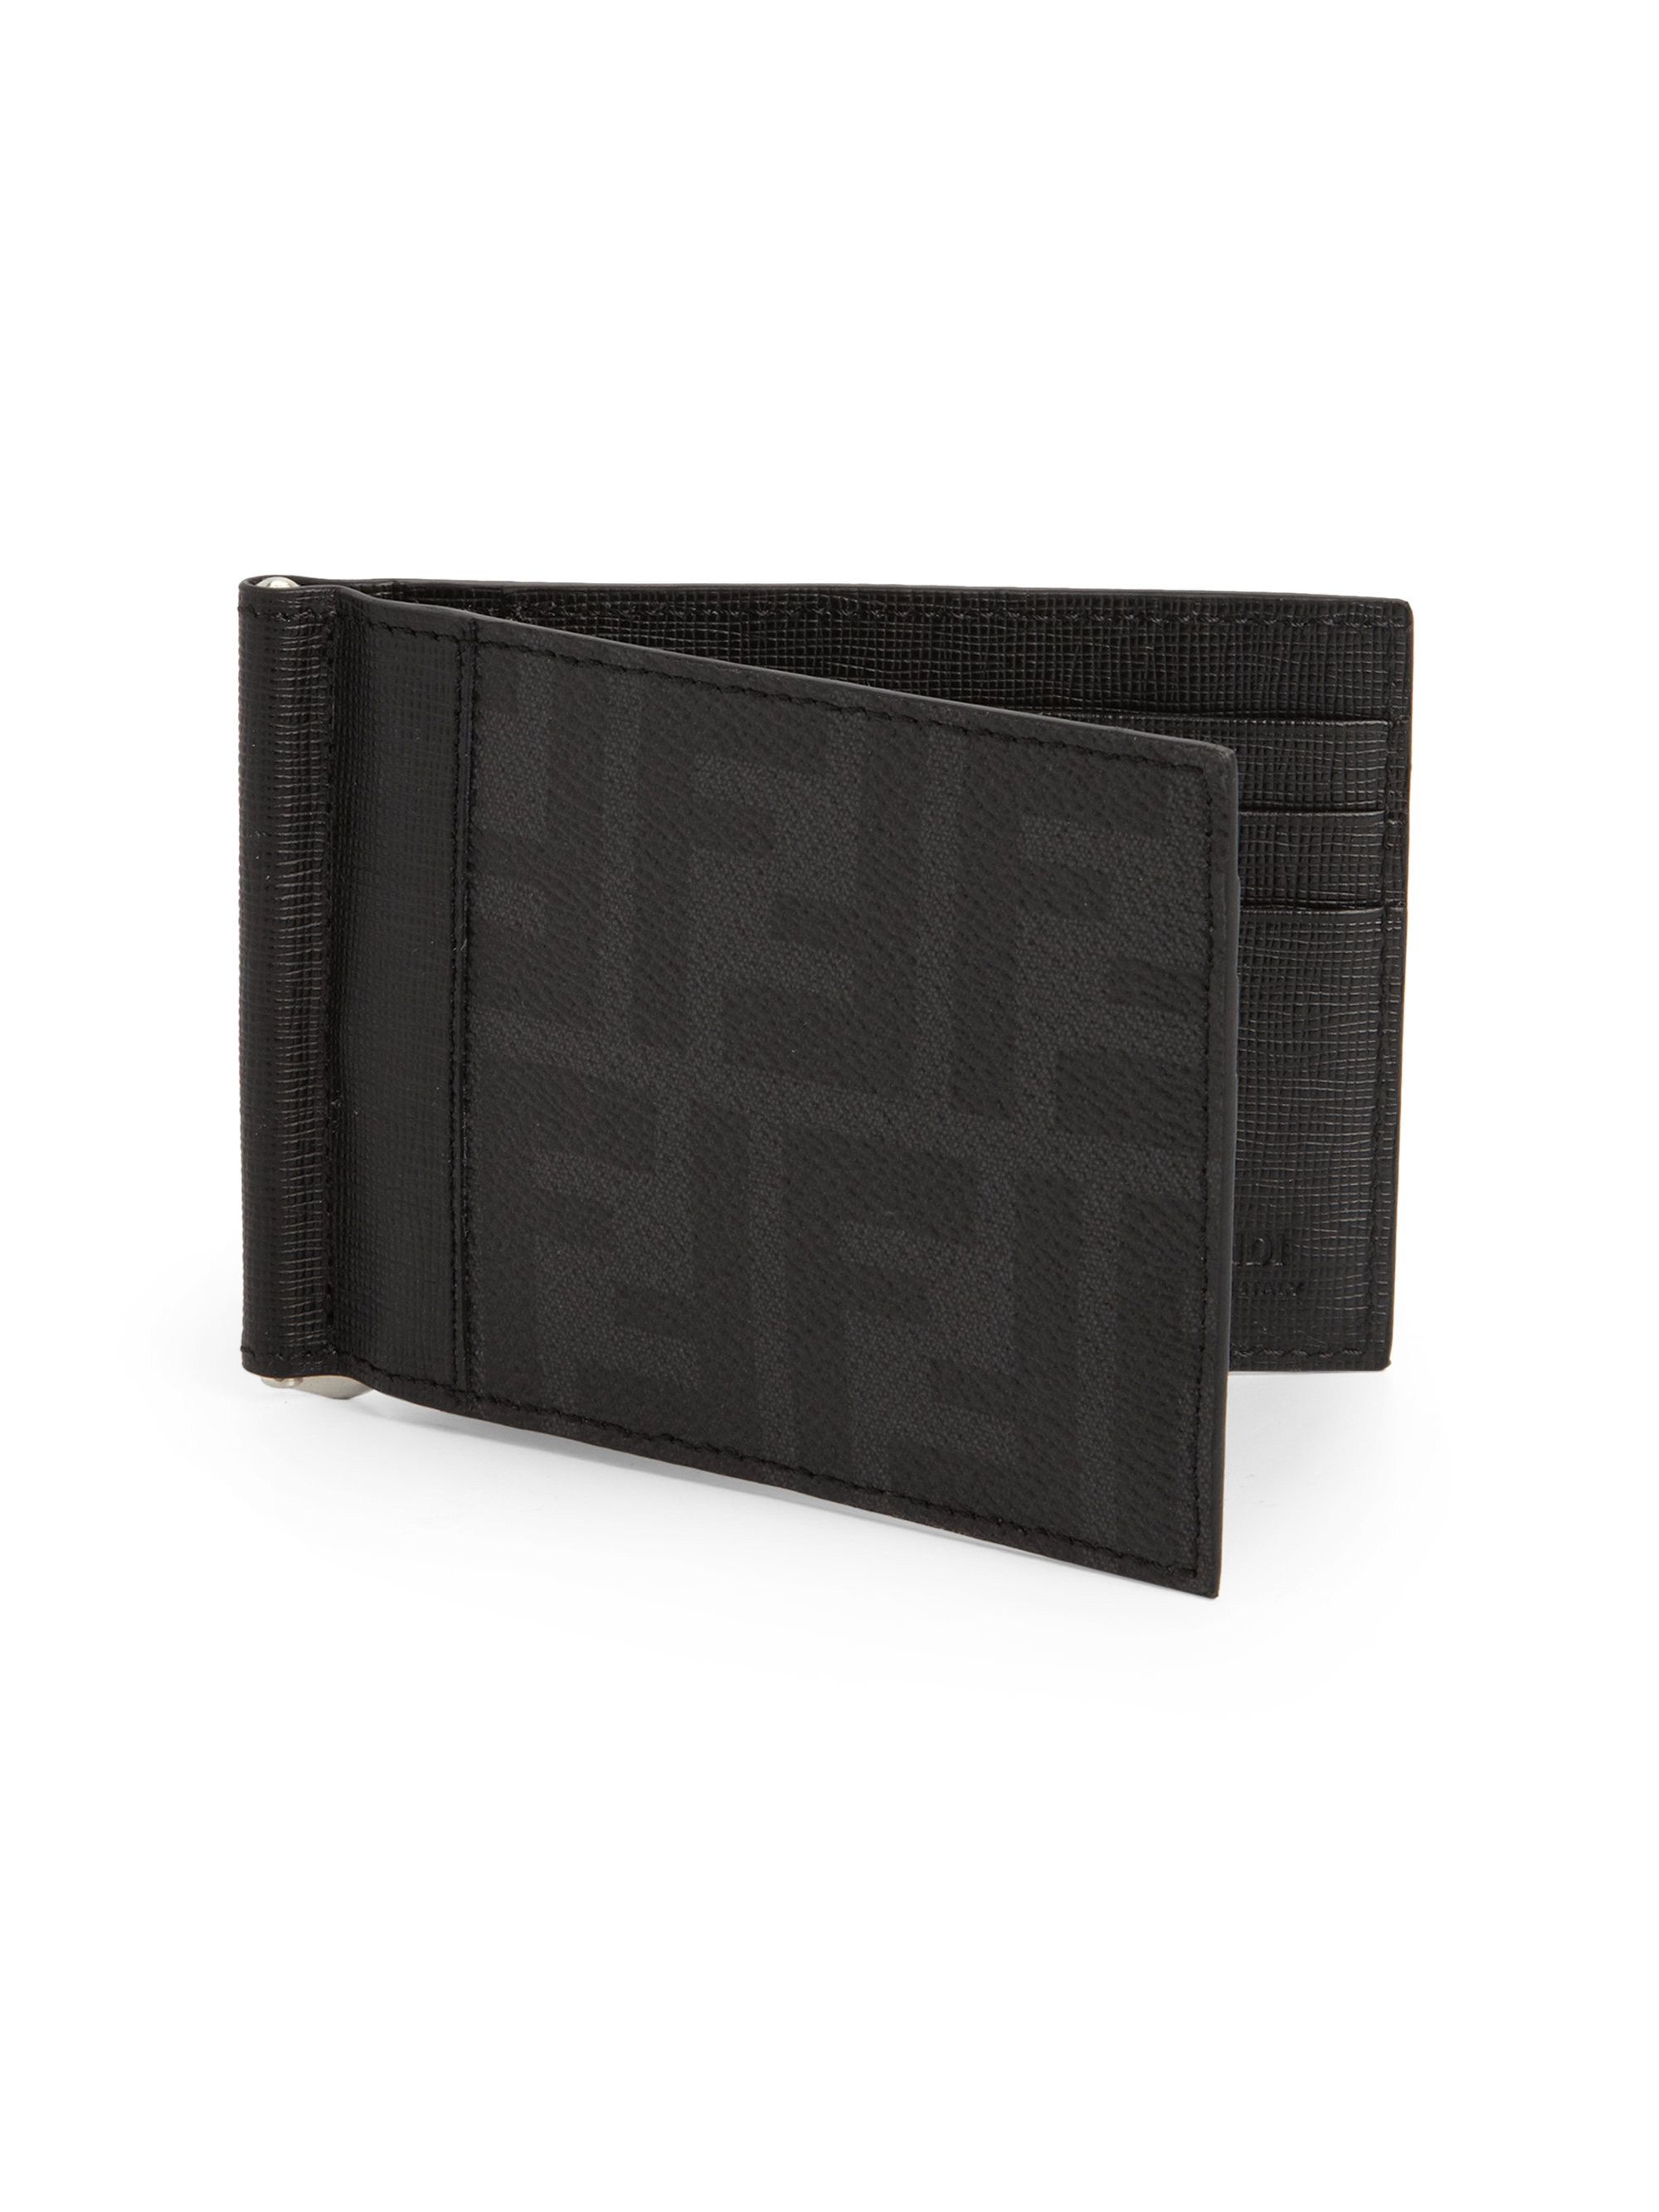 Fendi Canvas Money Clip Wallet in Black 